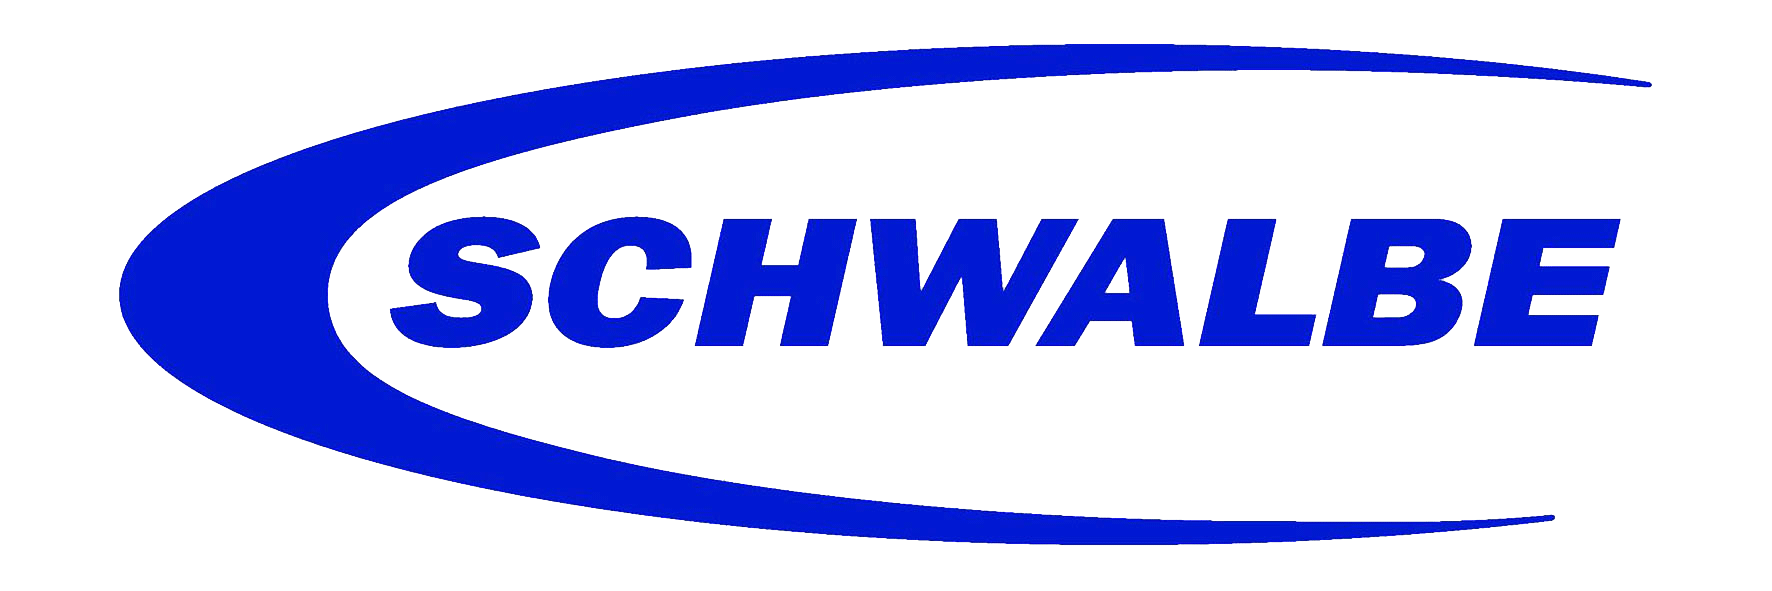 schwalbe-logo